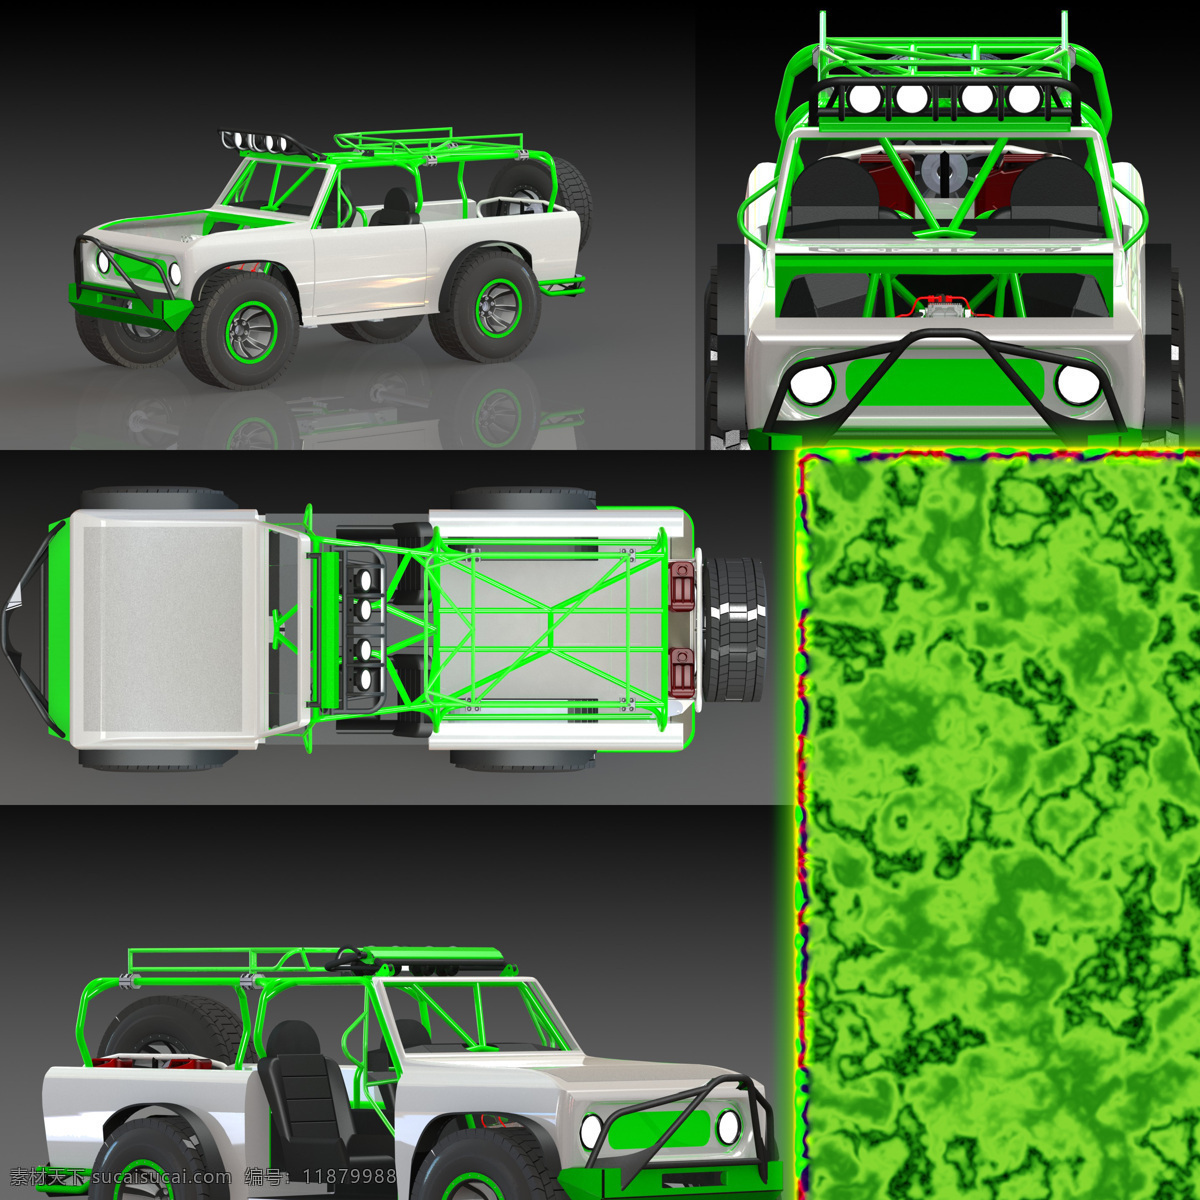 童子军 植入式 广告 概念 机械设计 汽车 杂项 3d模型素材 其他3d模型